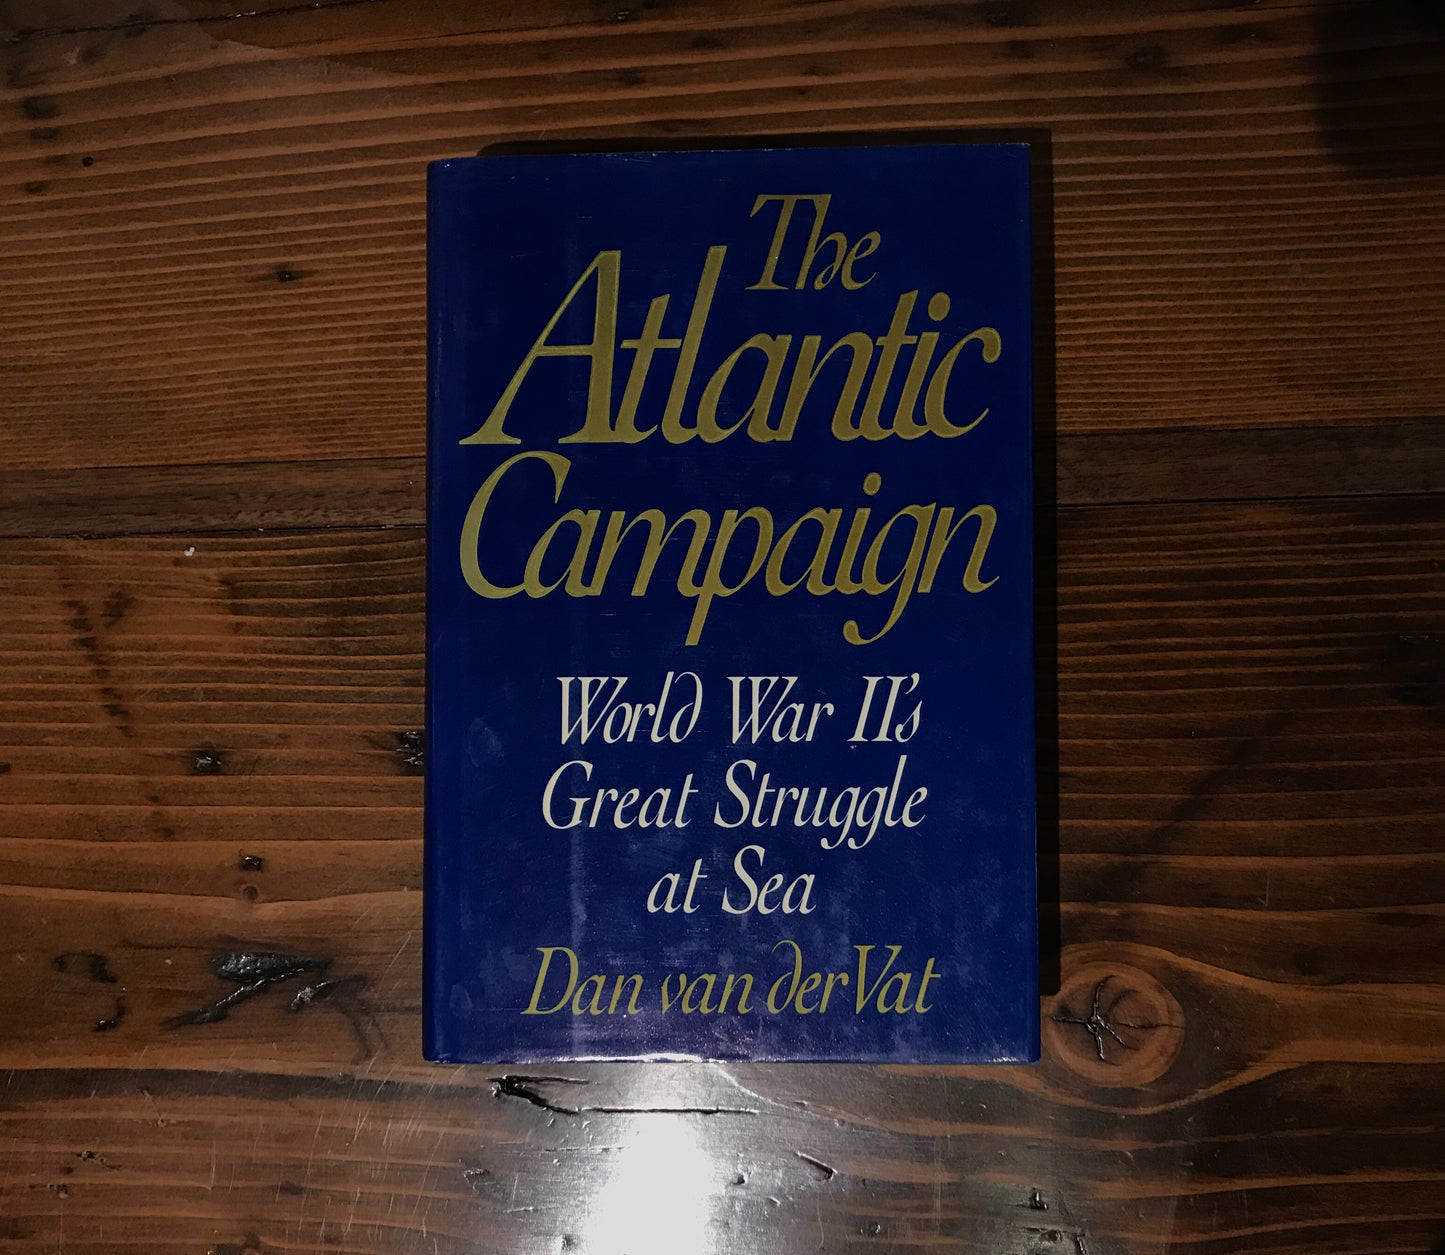 The Atlantic Campaign, Dan van deer Vat